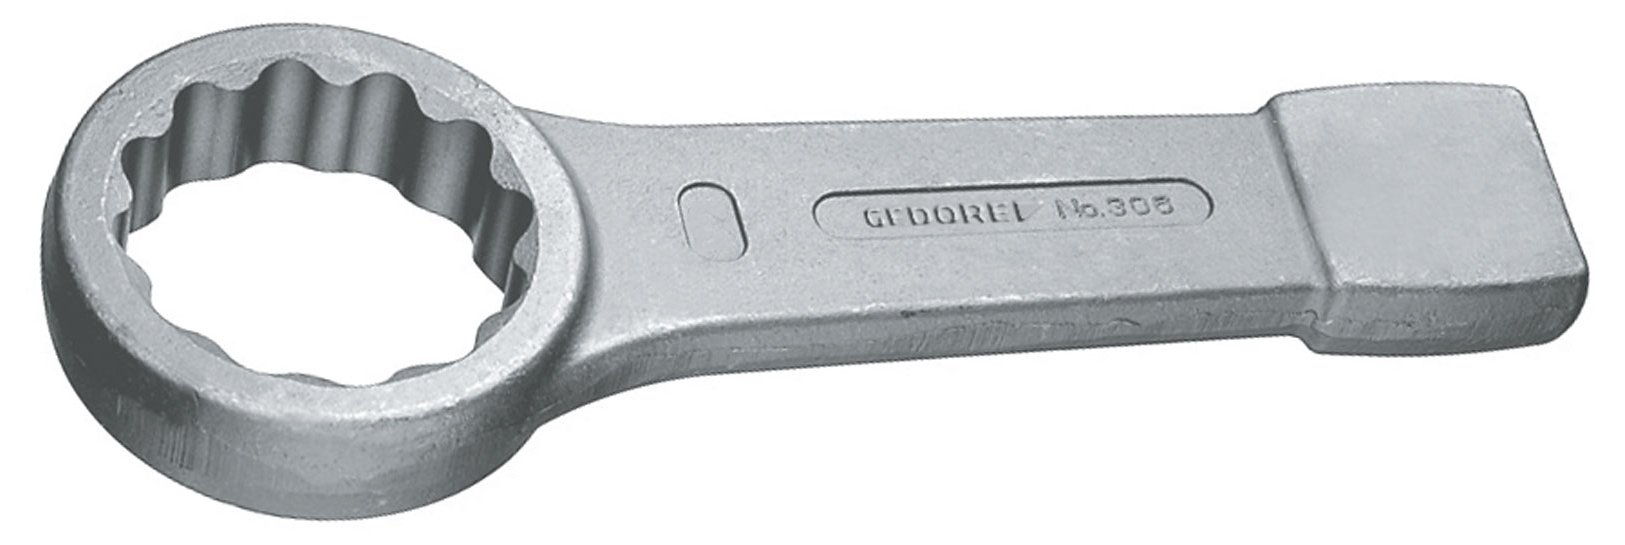 GEDORE Schlag-Ringschlüssel 30 mm, Hochpräzise Schlüsselweite, Robust für Industrie & Handwerk, Made in Germany - 30mm